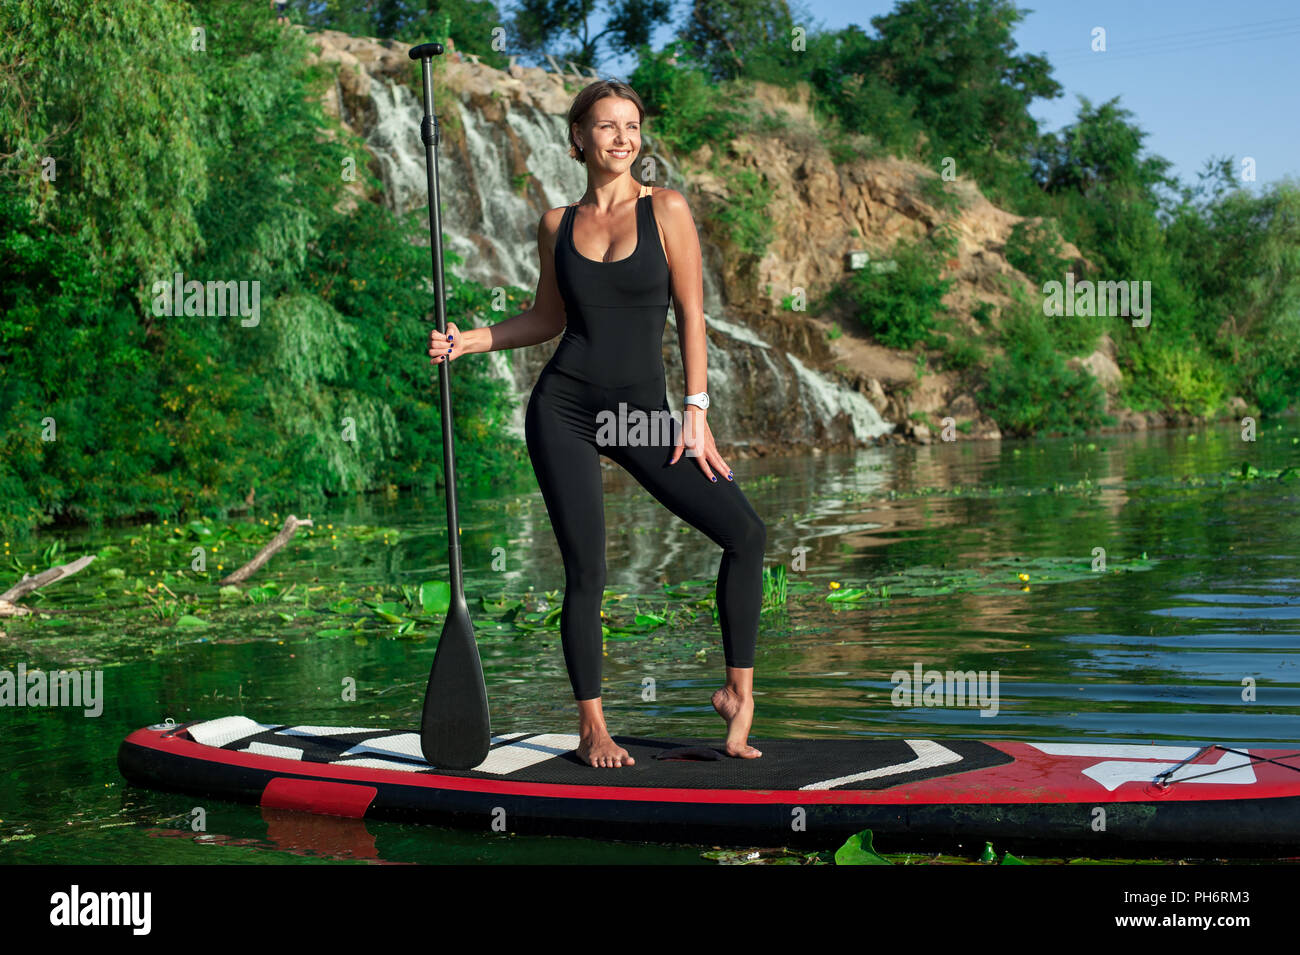 Jeune femme sportive remise en forme faire sur une carte avec une rame sur une rivière Banque D'Images